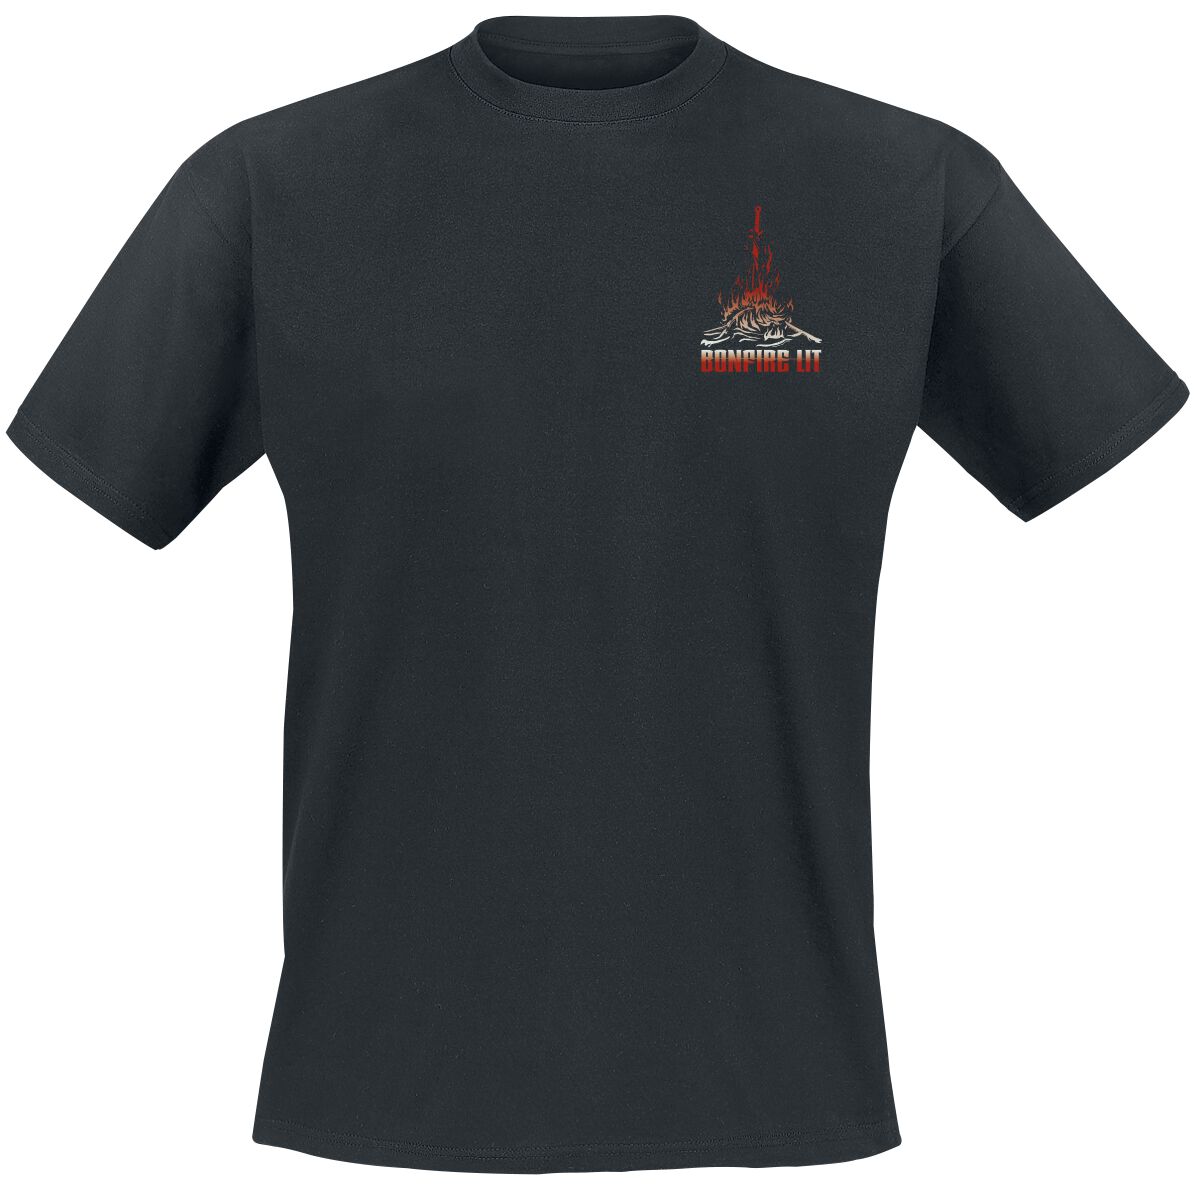 Dark Souls - Gaming T-Shirt - Bonfire Lit - S bis XXL - für Männer - Größe L - schwarz  - EMP exklusives Merchandise!